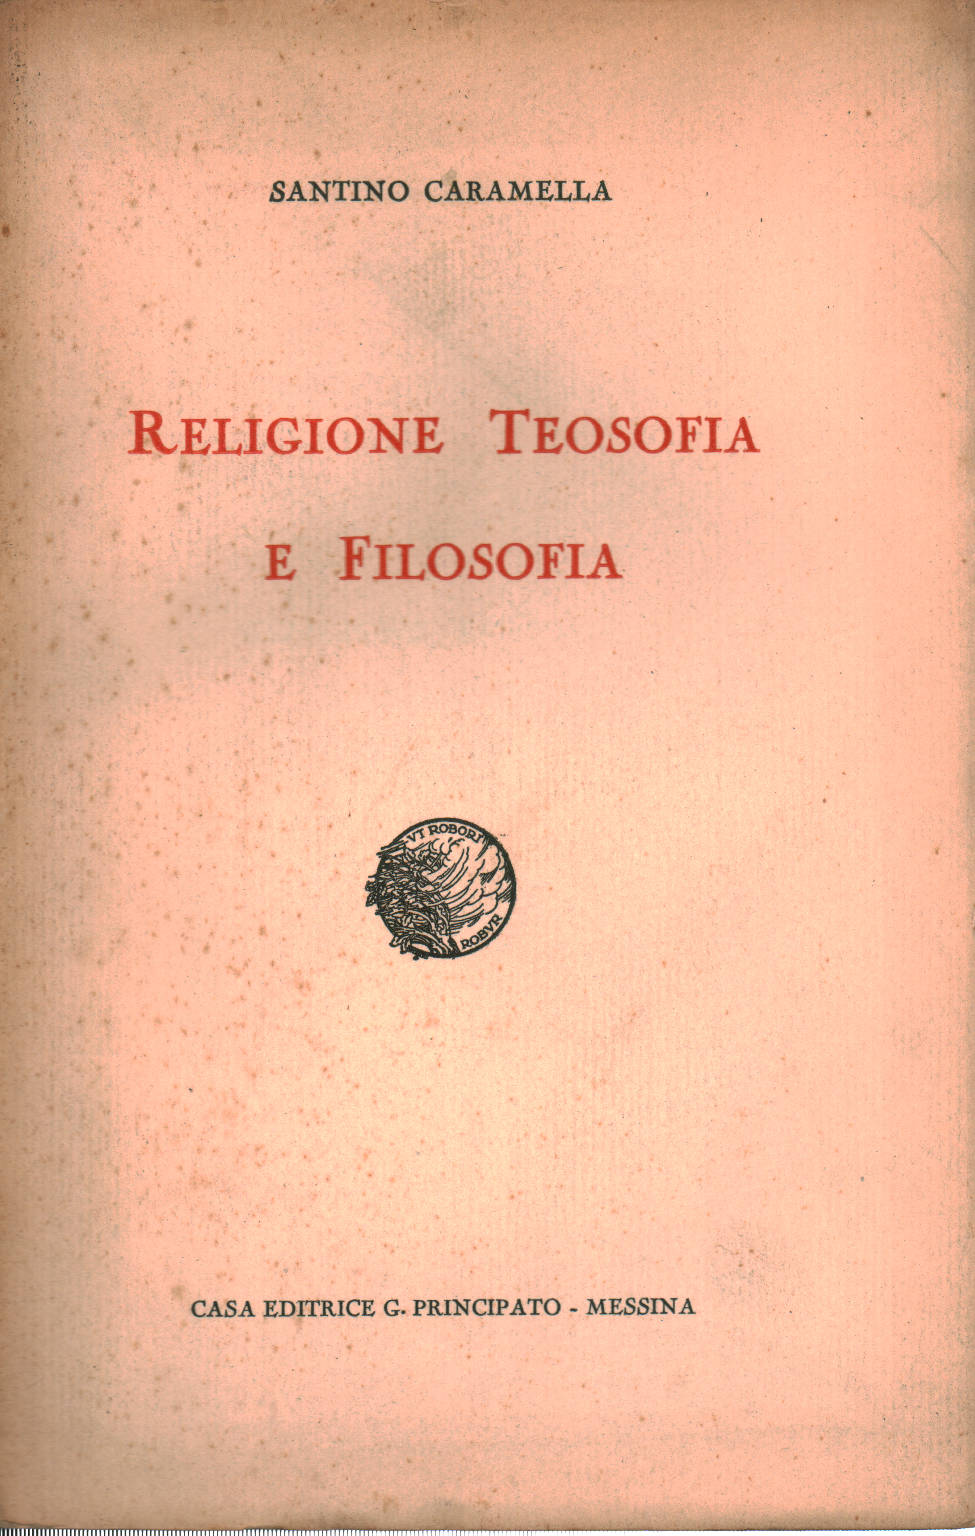 Religione teosofia e filosofia, Santino Caramella